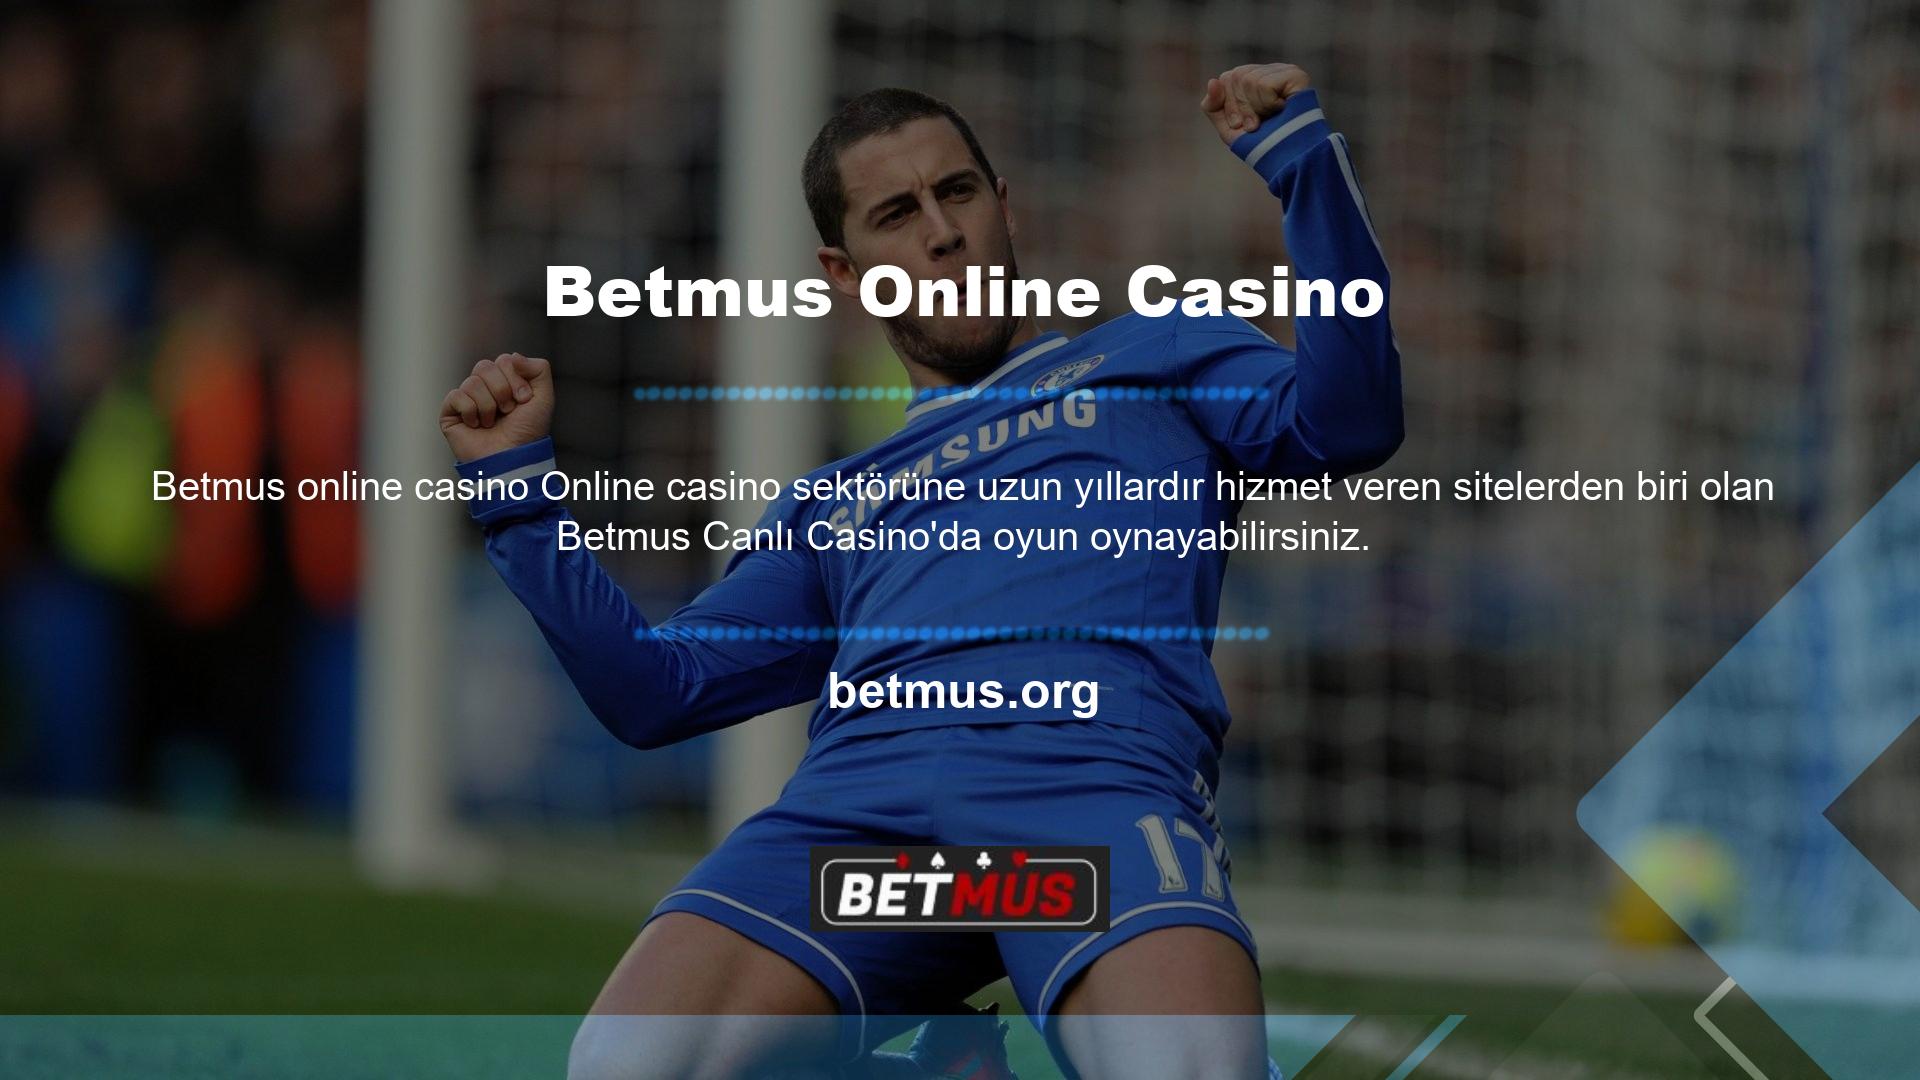 Kaliteli ve sağlam altyapısı sayesinde Betmus canlı casino oyunları daha aktif olarak oynanabilmektedir